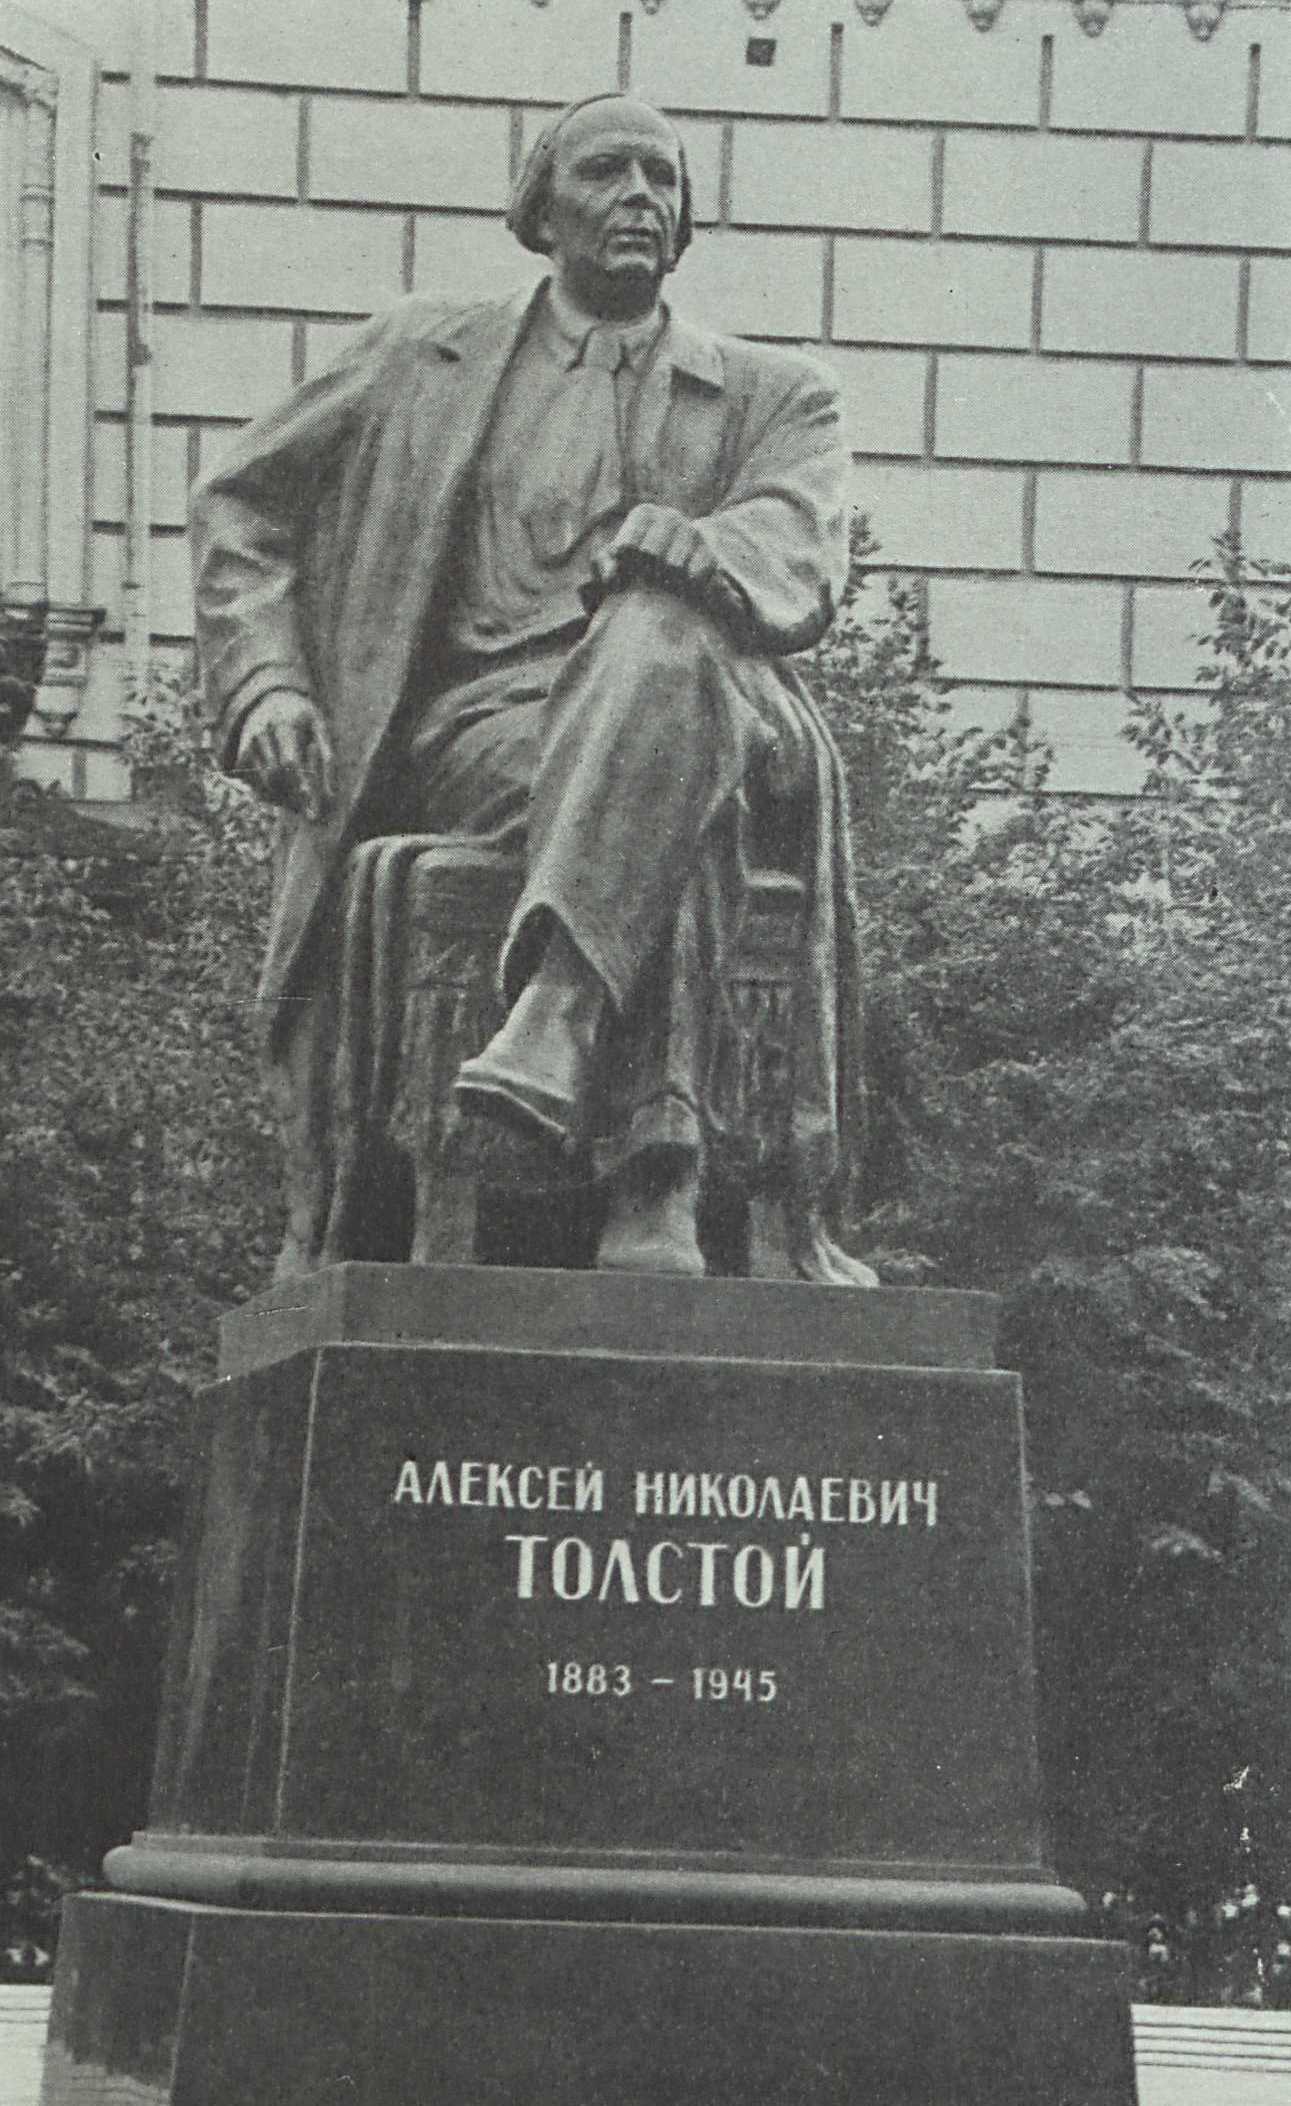 Скульптор Г. Мотовилов, архитектор Л. Поляков. Памятник А. Н. Толстому в Москве. 1957.